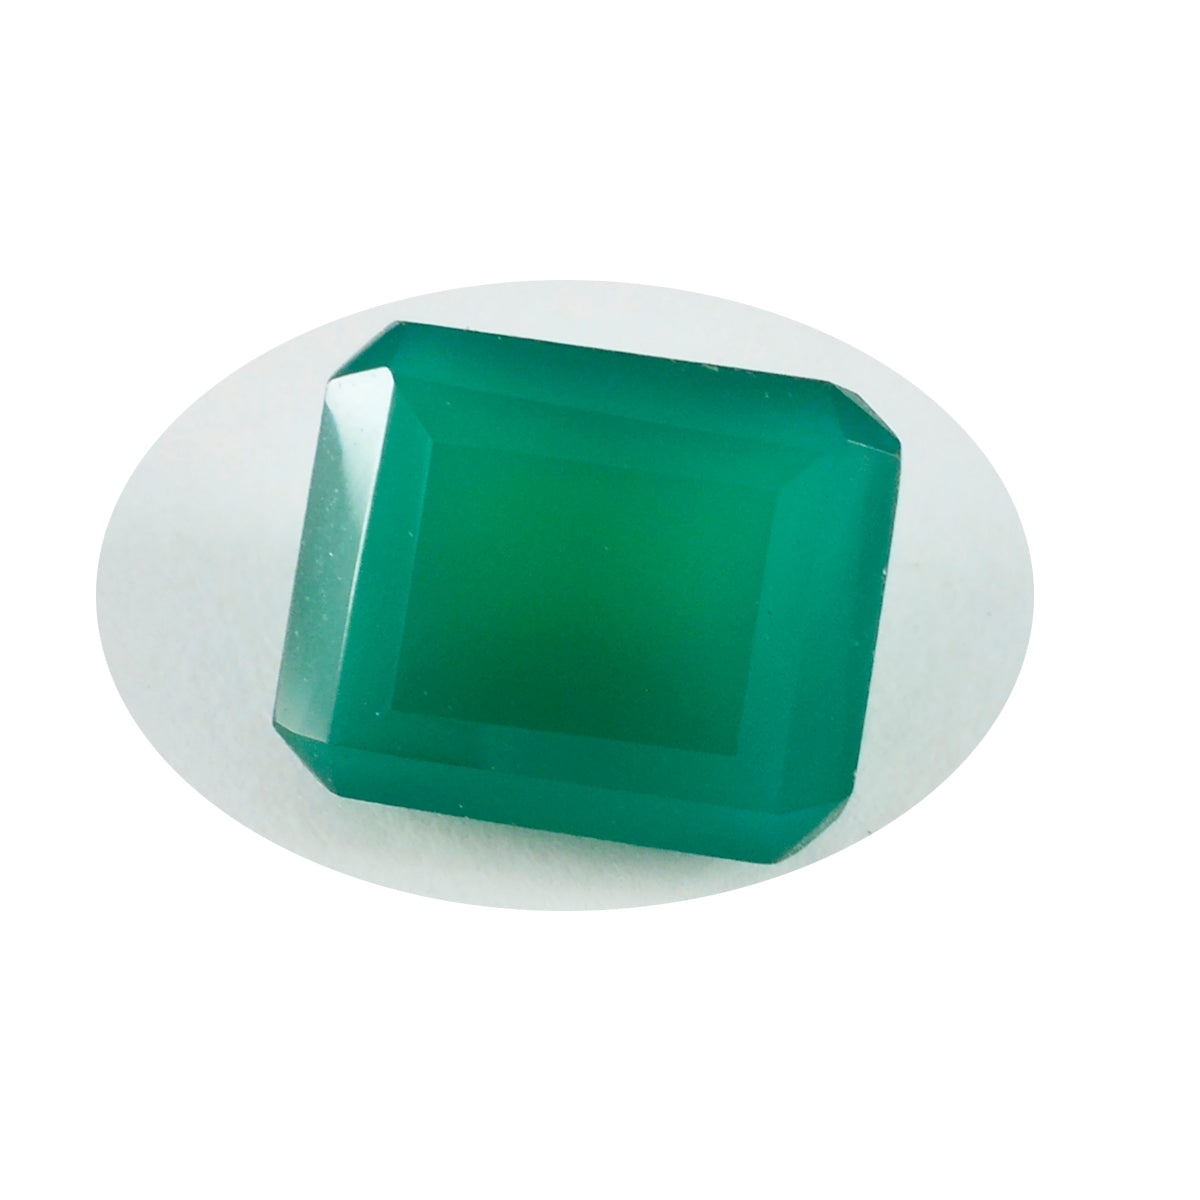 Riyogems 1 Stück echter grüner Onyx, facettiert, 10 x 14 mm, achteckige Form, gute Qualität, loser Edelstein